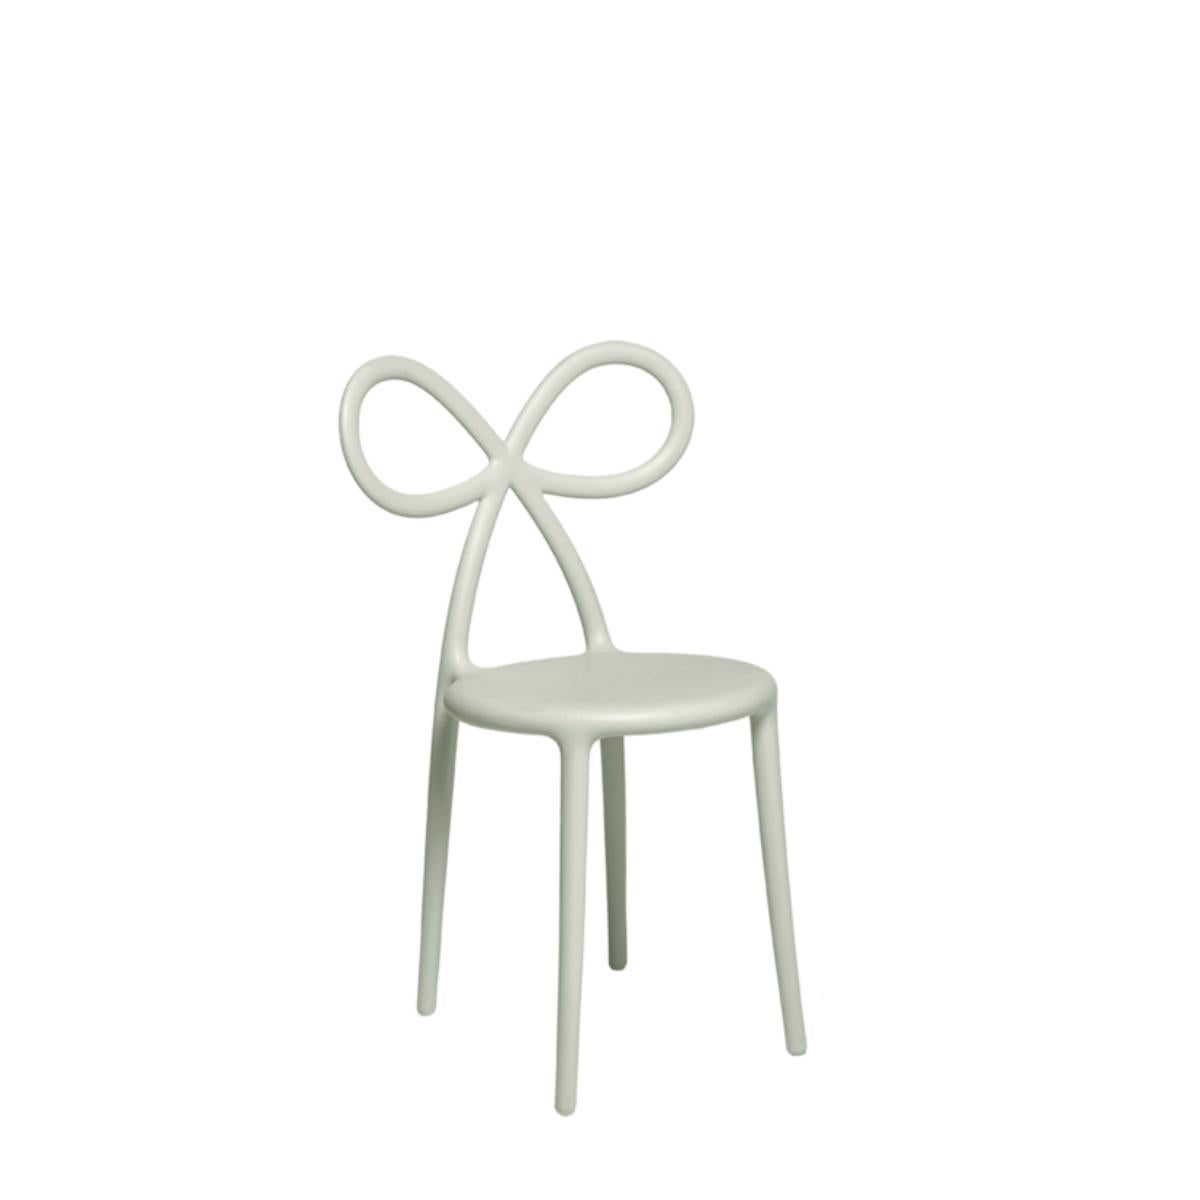 La chaise féminine par excellence est désormais proposée en version mini, adaptée aux enfants. Les formes délicates et essentielles rappellent la Ribbon Chair dans sa taille originale : c'est ainsi qu'est née une chaise de petite taille à l'identité